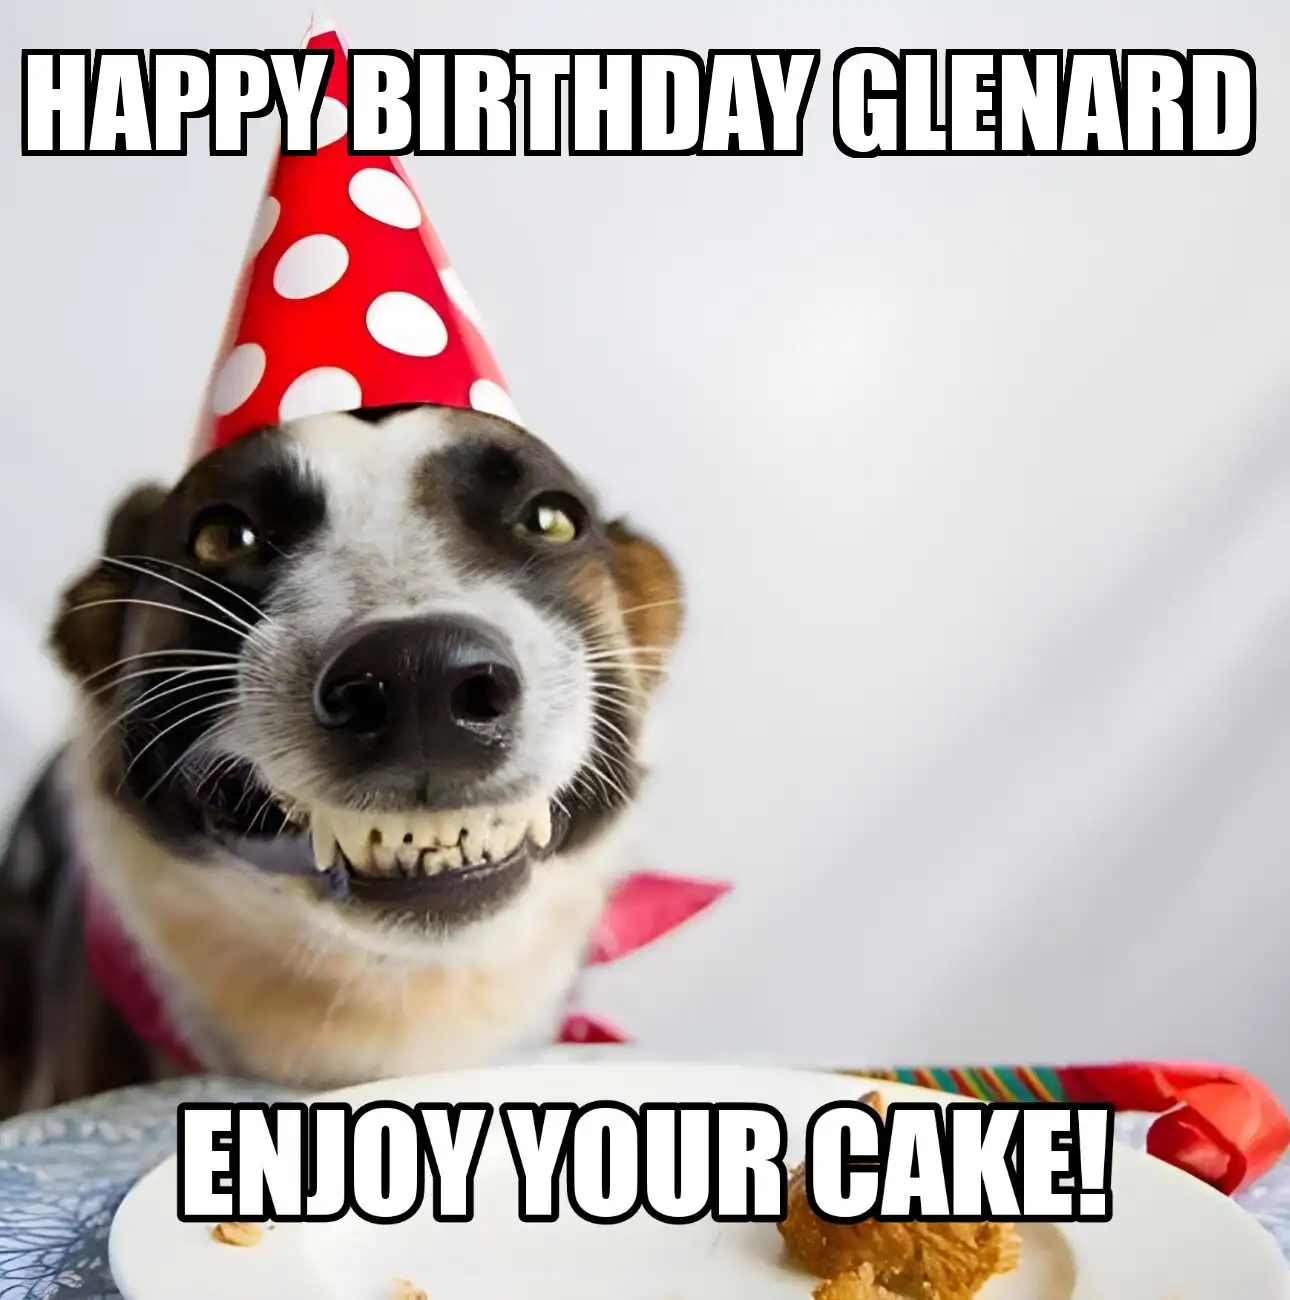 Happy Birthday Glenard Enjoy Your Cake Dog Meme